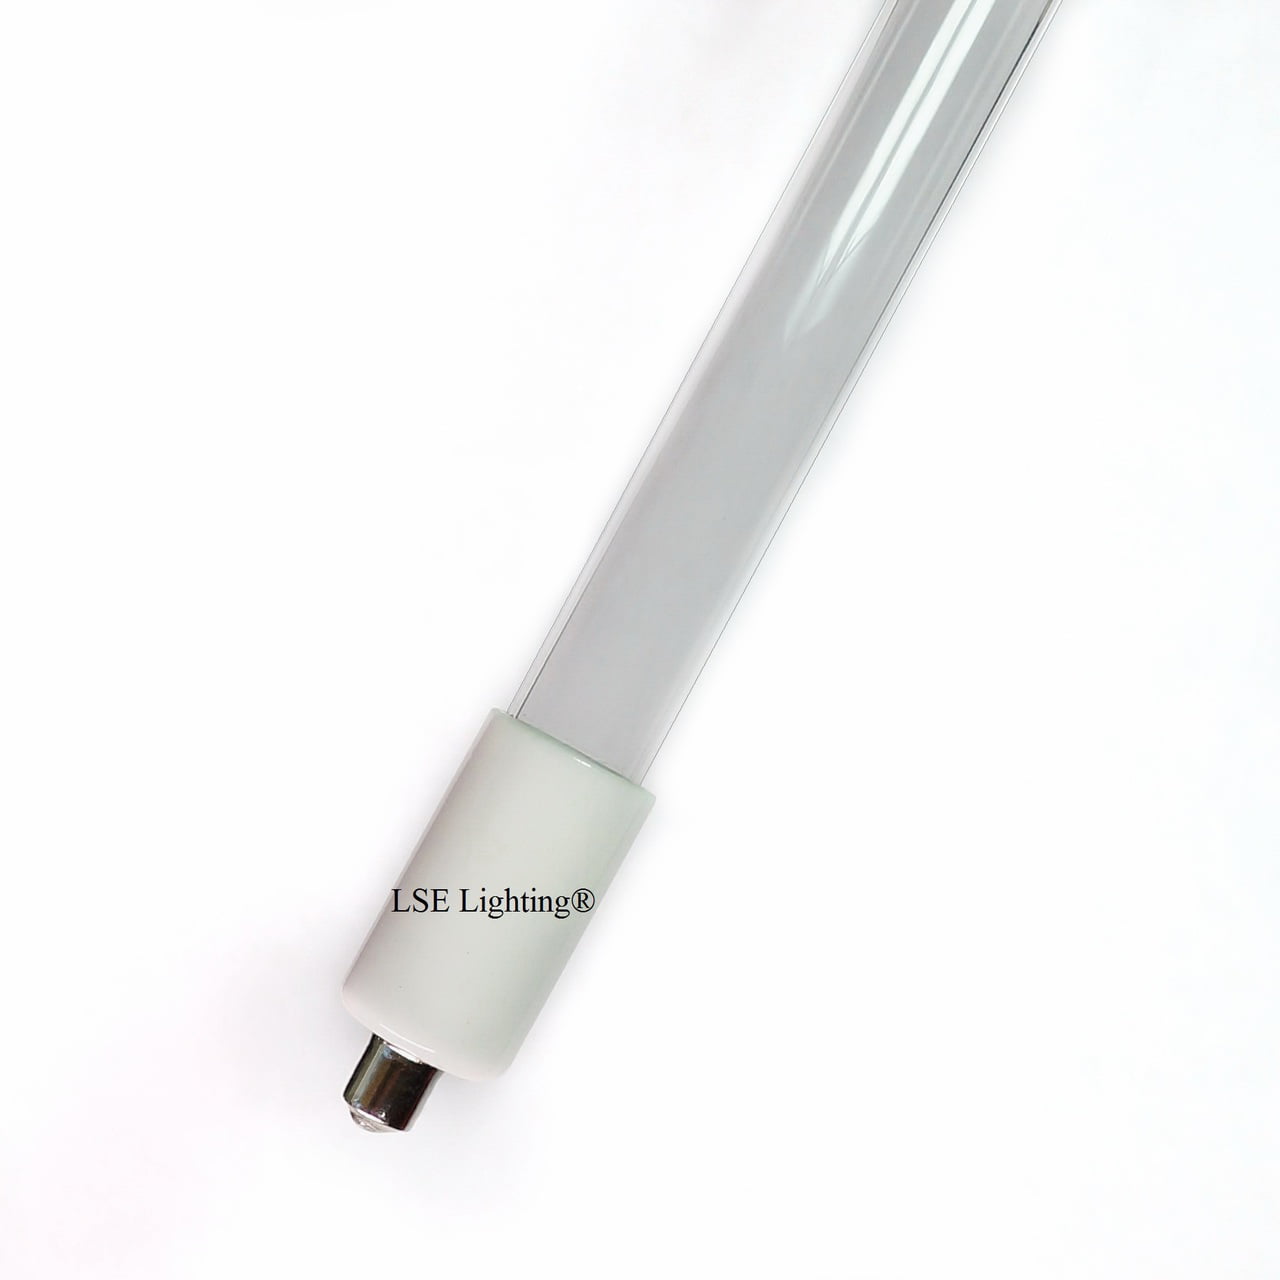 LSE Lighting SHO600-QL UV Lamp/Sleeve Combo Kit for SPV-12 SPV-600 SP600-HO 